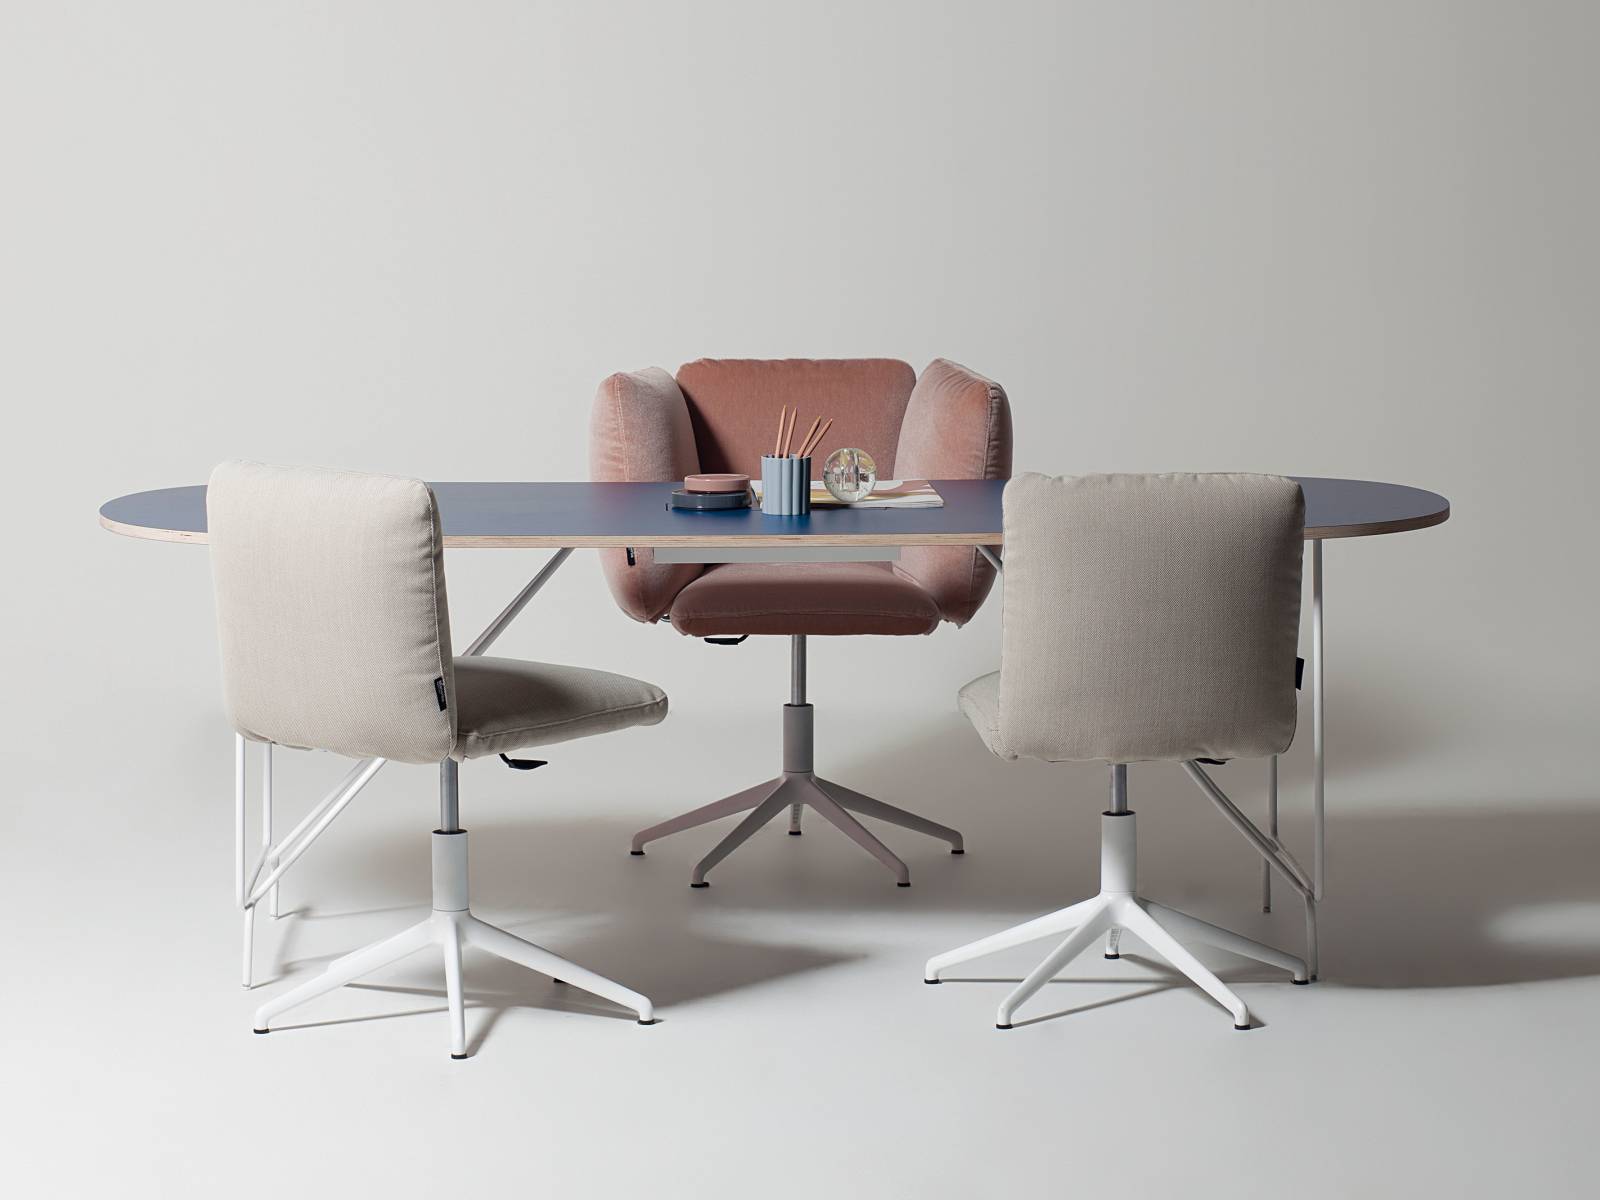 Revo ist eine elegante Tischkollektion, die sicher nicht nur im Officebereich stehen kann. Die farbigen Tischplatten aus Holz oder Glas werden von Beinen in Kupfer, Silber oder Gold getragen. Design Giovanni Giacobone und Massimo Roj.